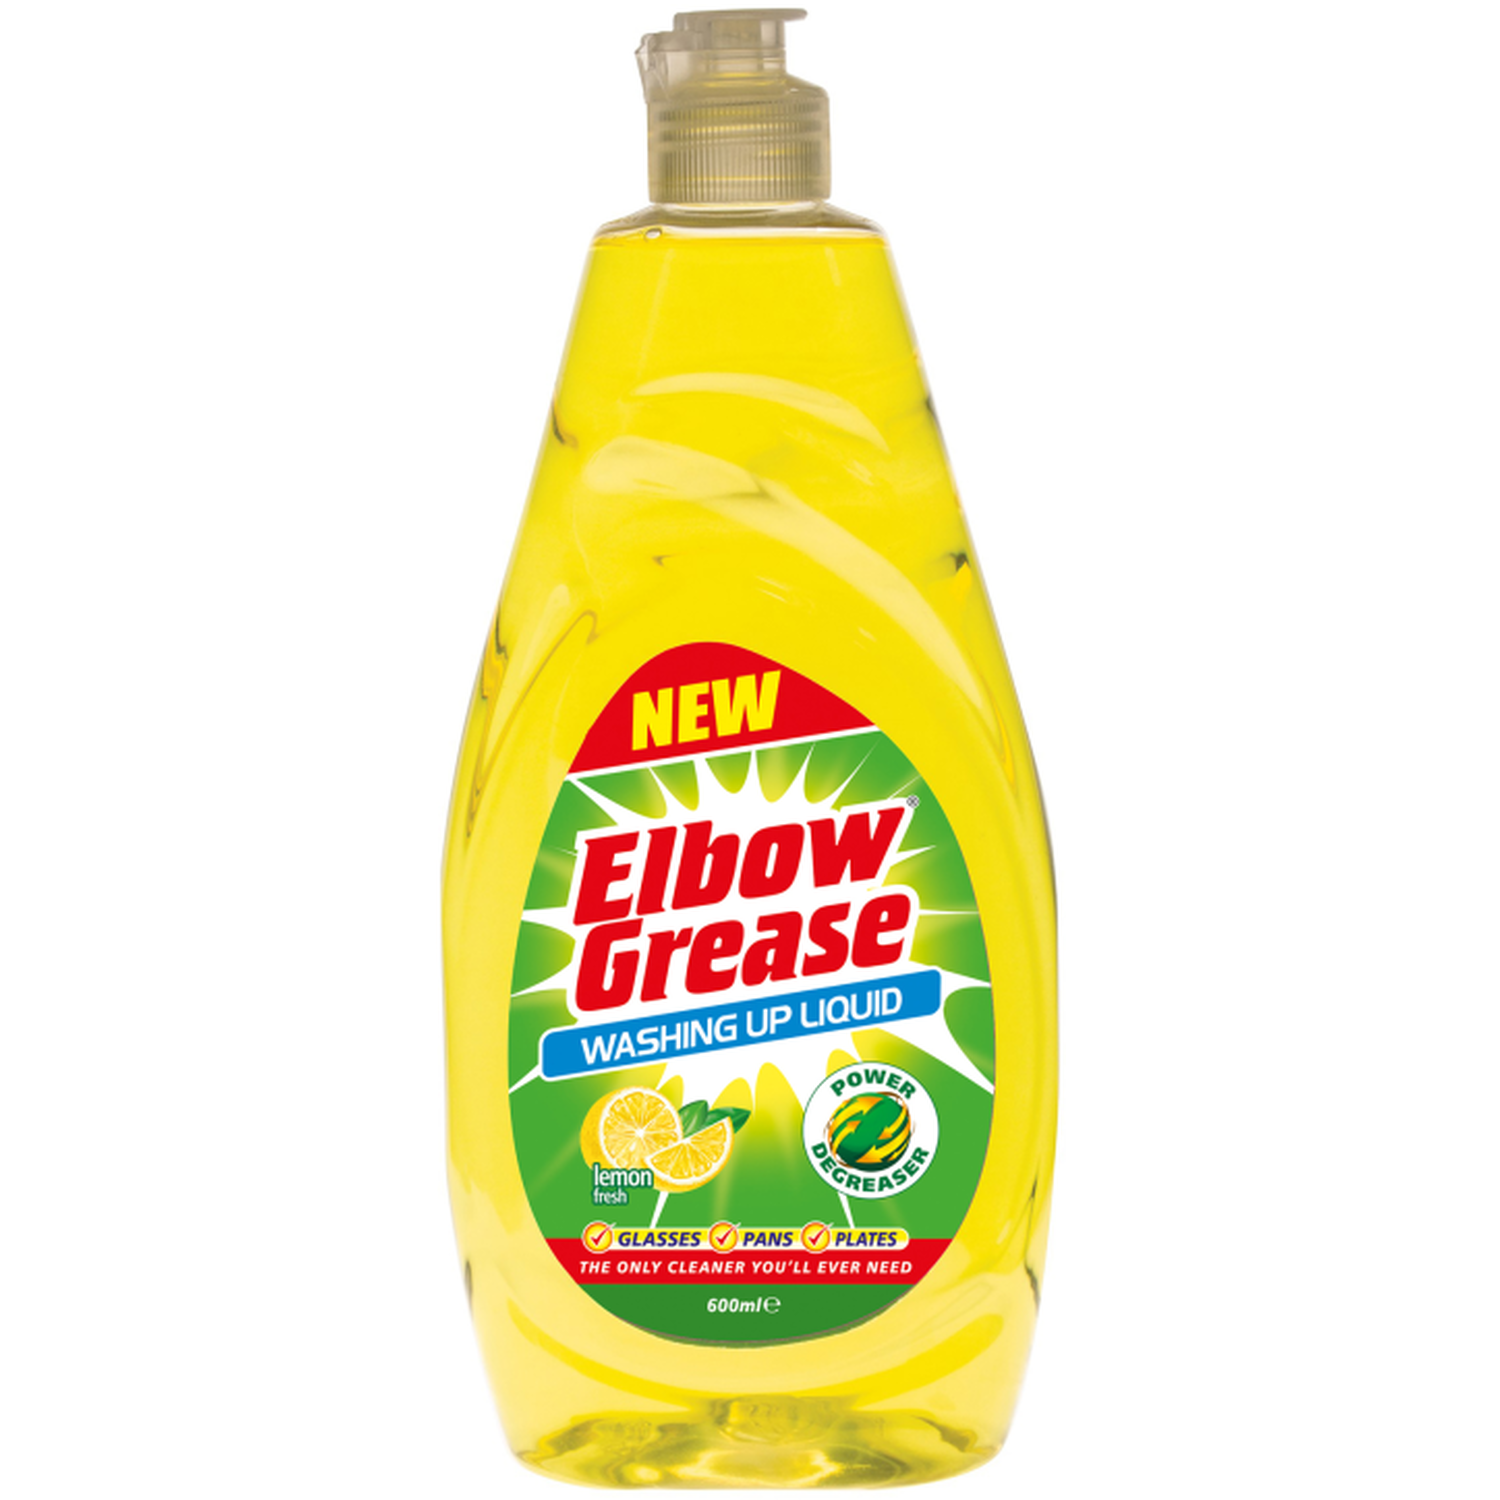 Elbow Grease Washing Up Liquid - Lemon Fresh Image